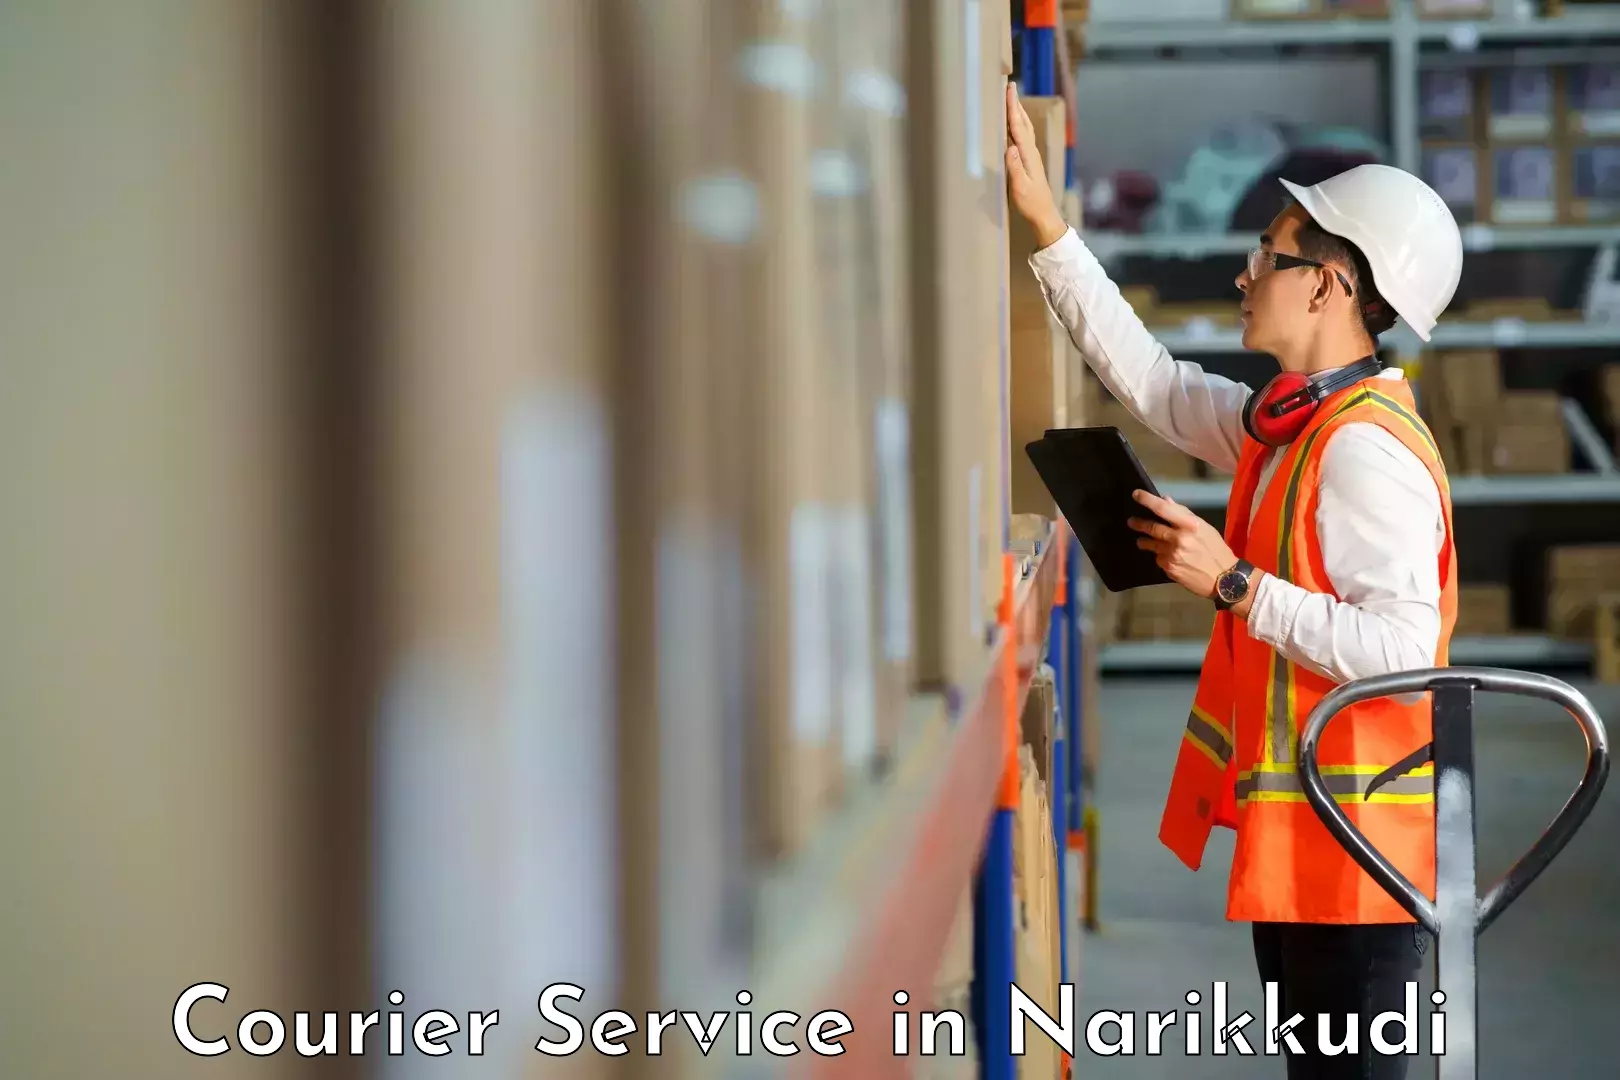 Courier rate comparison in Narikkudi